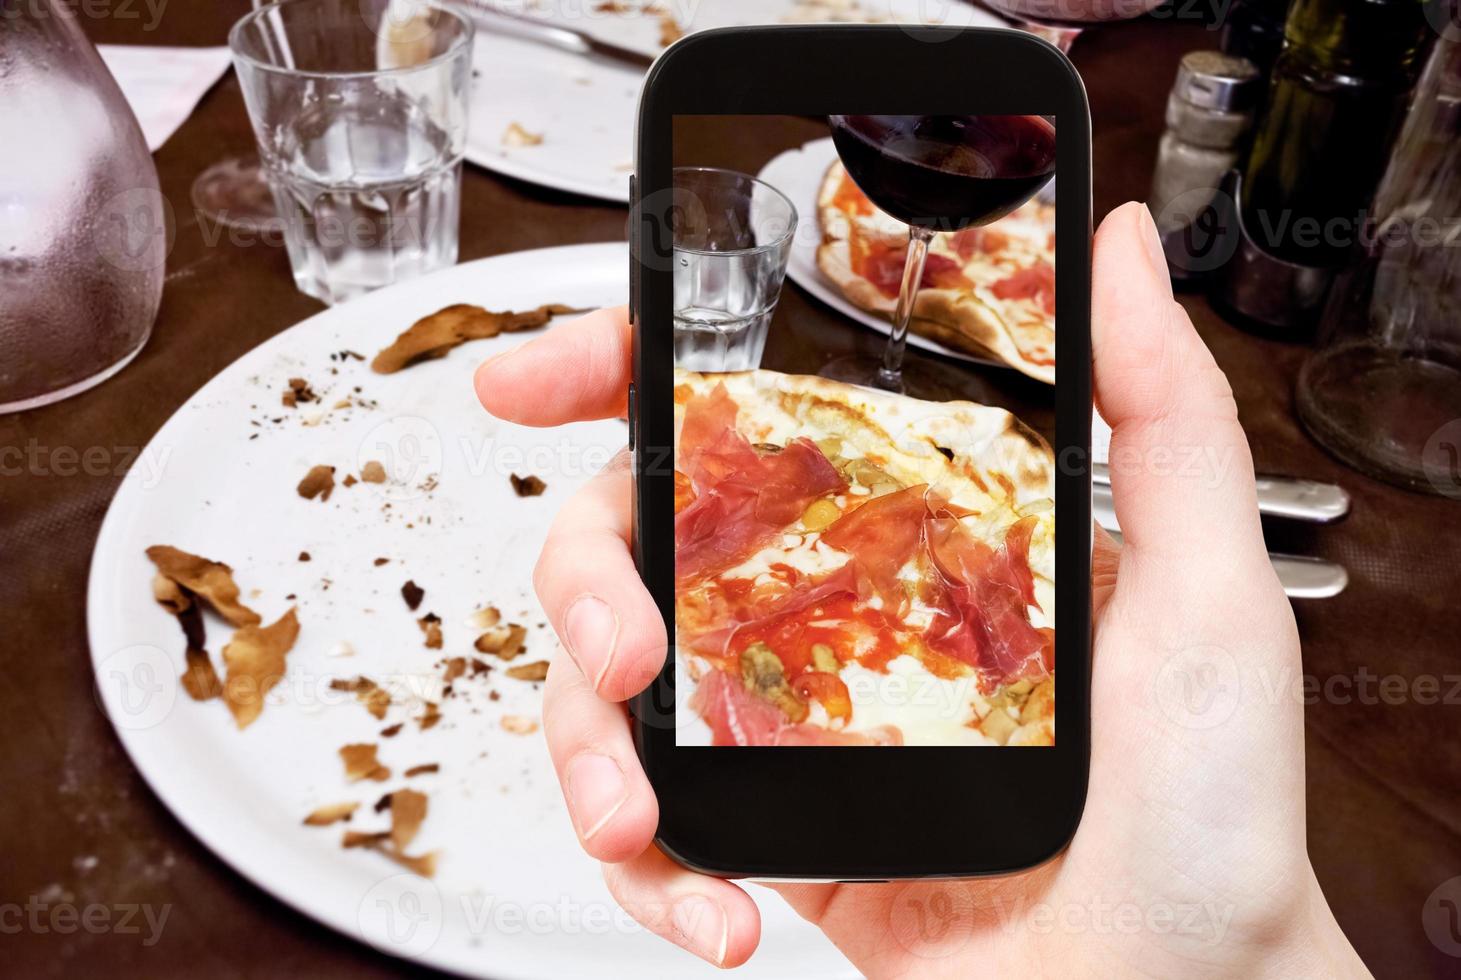 turista fotografie italiano Pizza con parma prosciutto